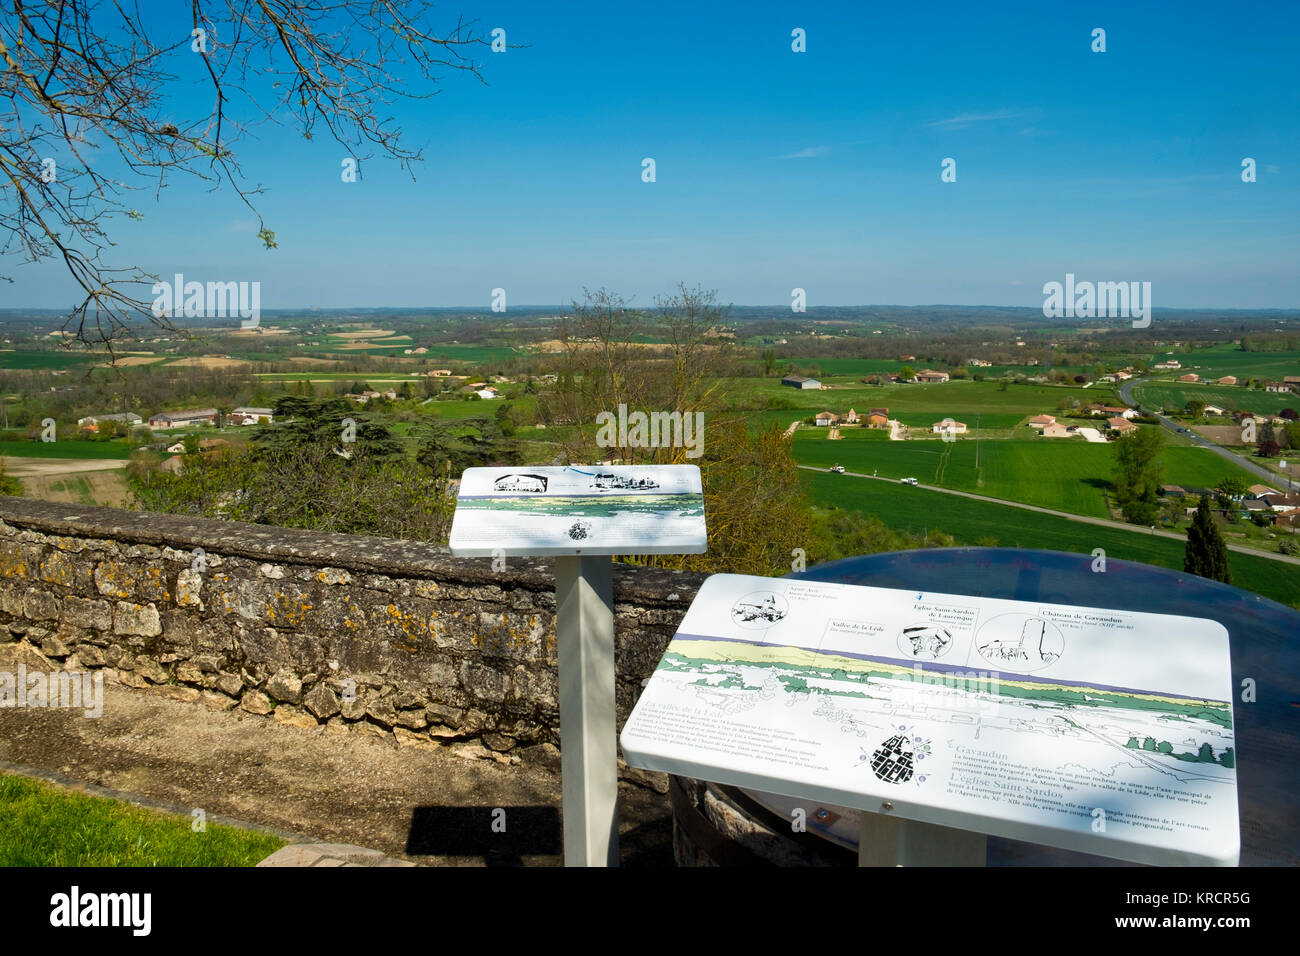 Brettern beschreiben die Funktionen von weit reichenden Blick über die offene Landschaft von hilltop Monflanquin, Lot-et-Garonne, Frankreich. Dieses malerische Gemeinschaft ist gedacht, um eine historisch gesehen die intakten Beispiele für eine Mittelalterliche Bastide. Stockfoto